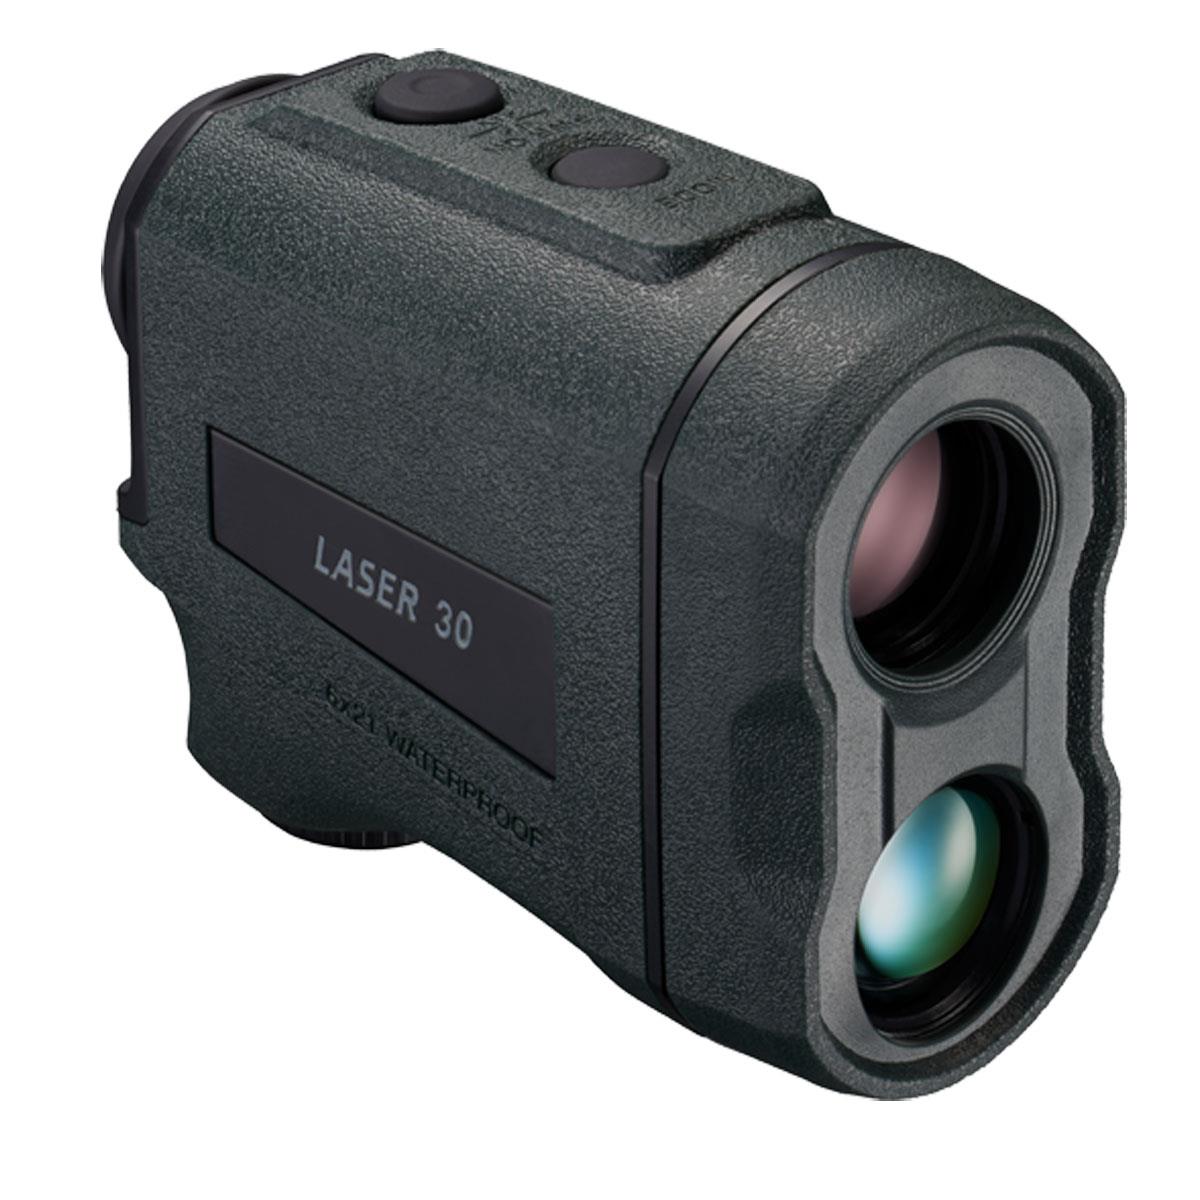 

Nikon LASER 30 6x Laser Rangefinder, 1600 yd